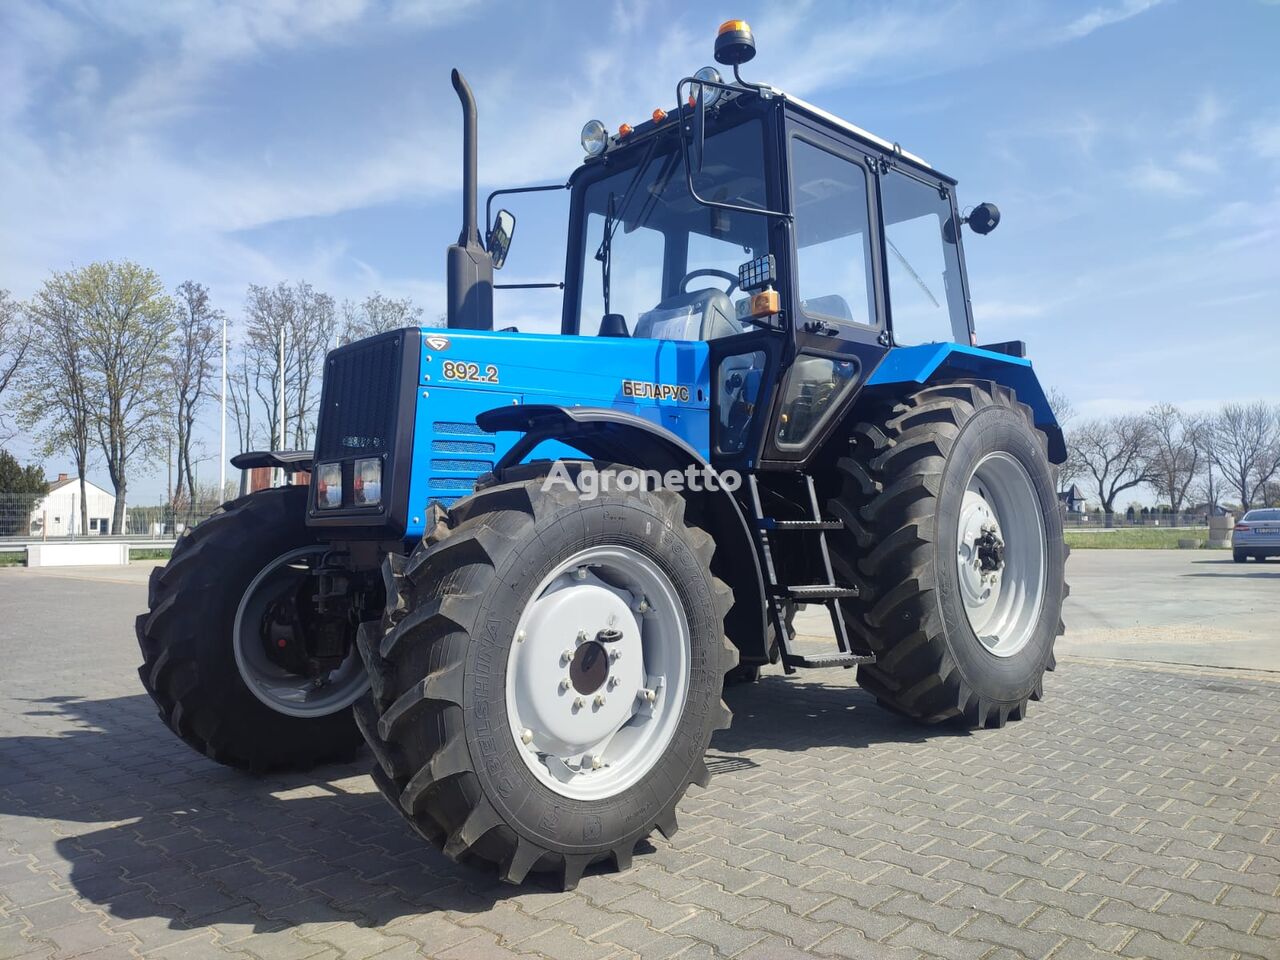 Belarus MTZ 892.2 wheel tractor